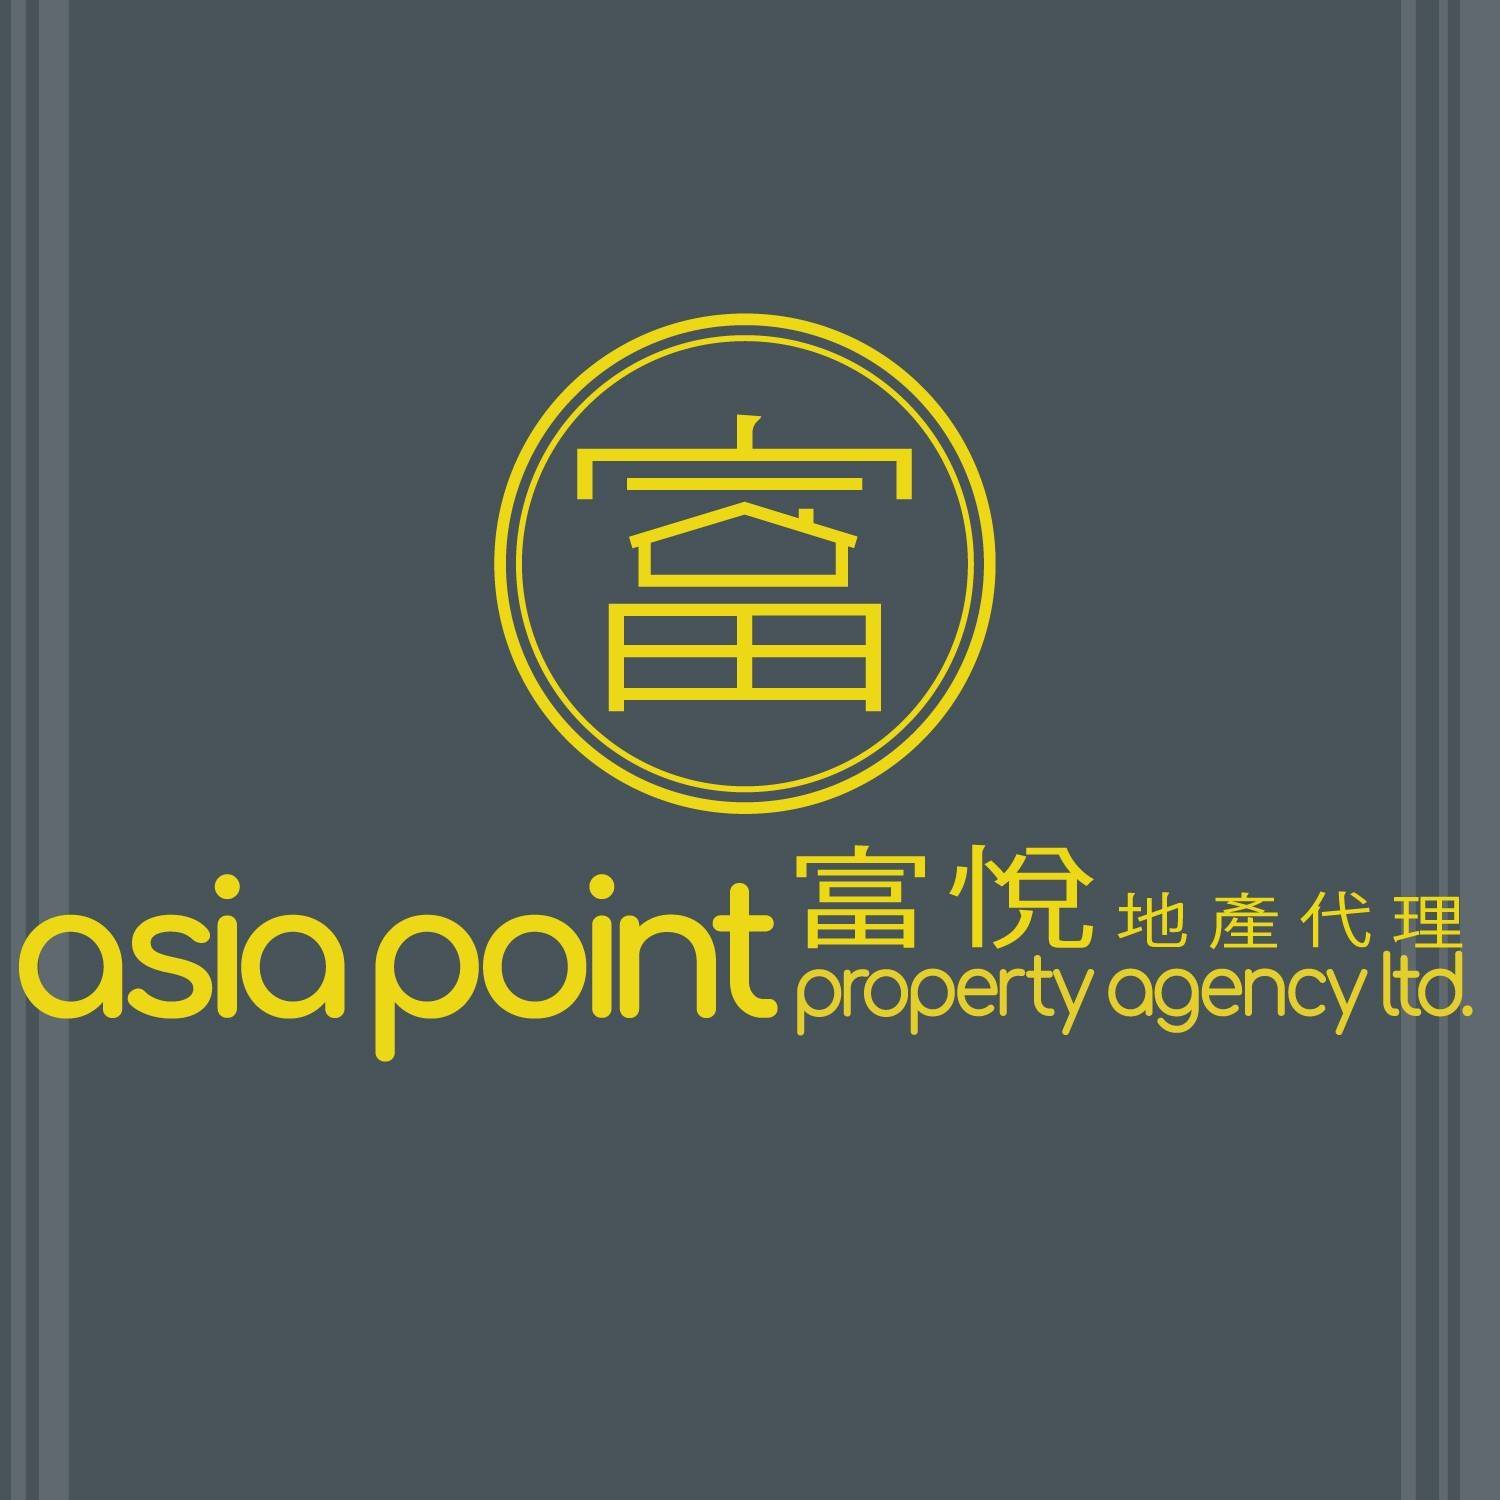 地產代理公司: Asia Point 富悅地產代理